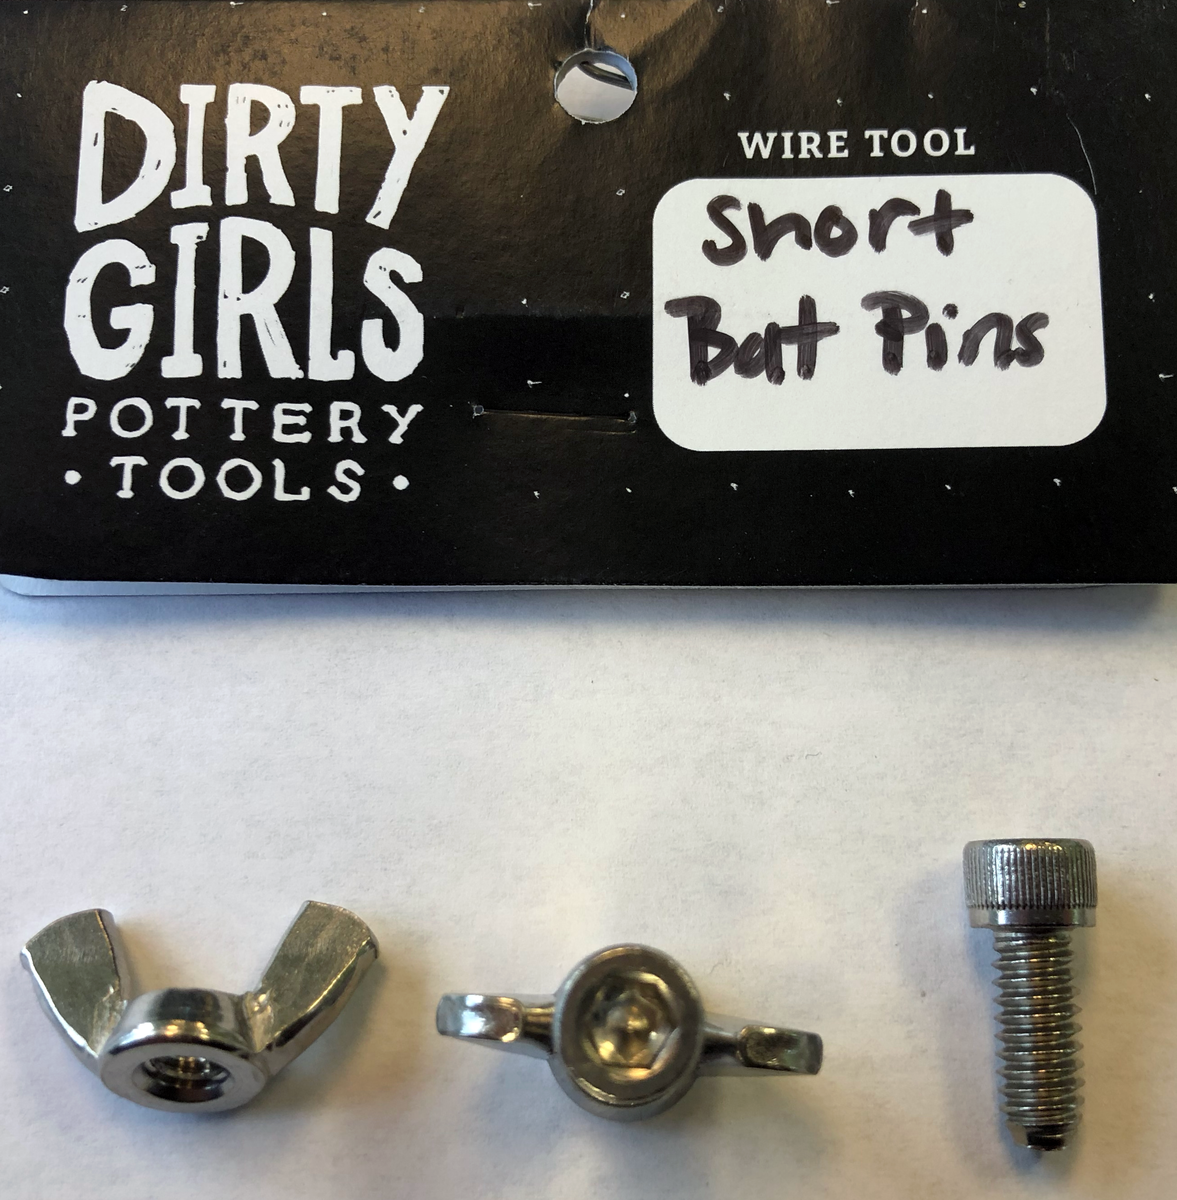 Bat Pin Kit – Krueger Pottery Supply